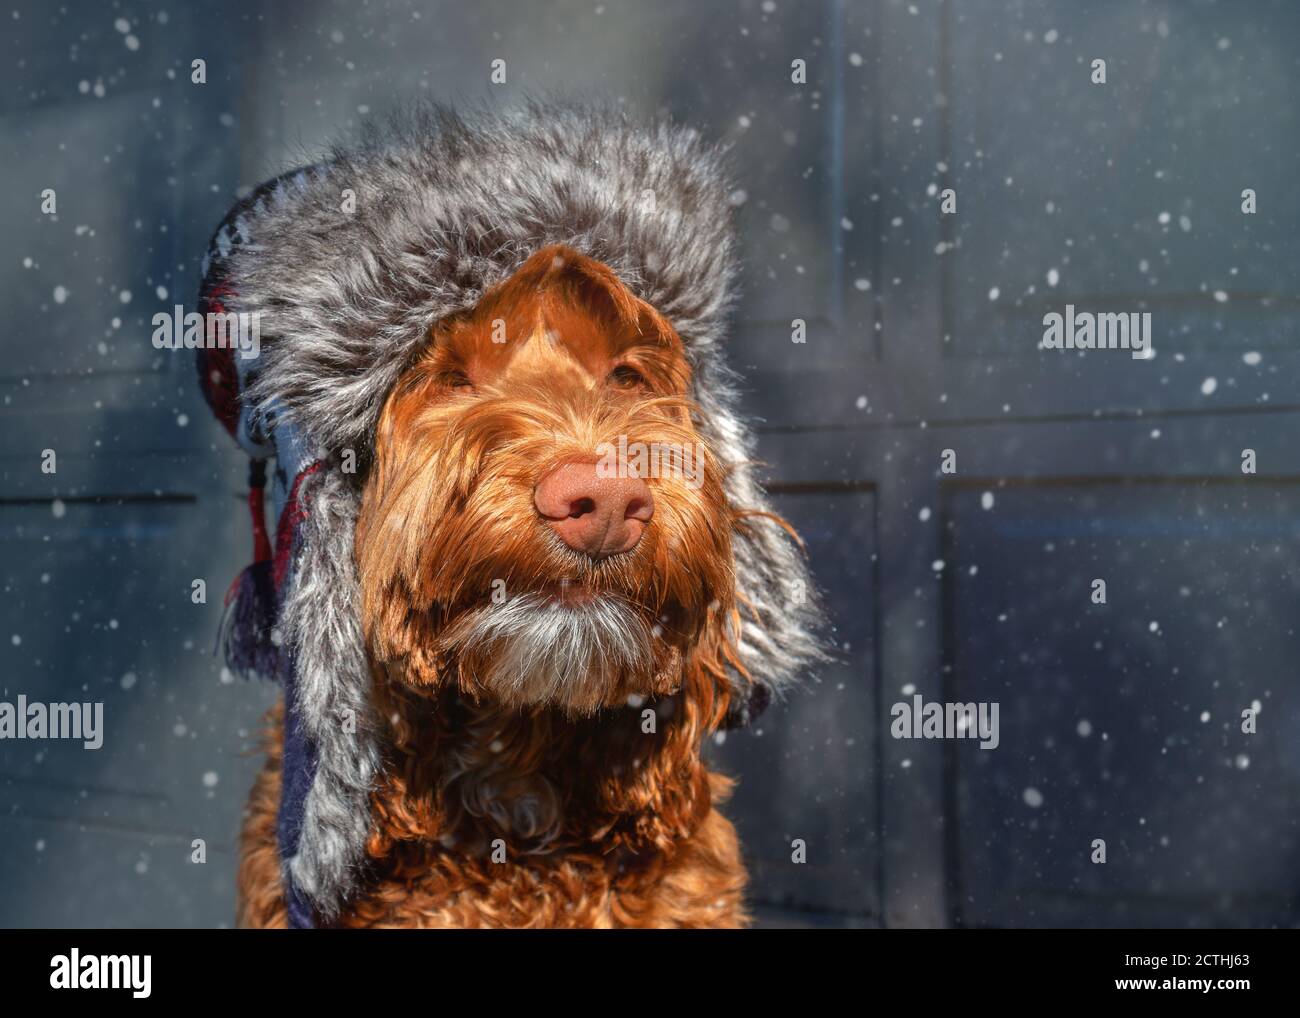 Cane soffice in tempesta di neve. Il Labradoodle marrone indossa un cappello aviatore in pelliccia sintetica. Ritratto del cane. Luce soffusa e fiocchi di neve. Foto Stock